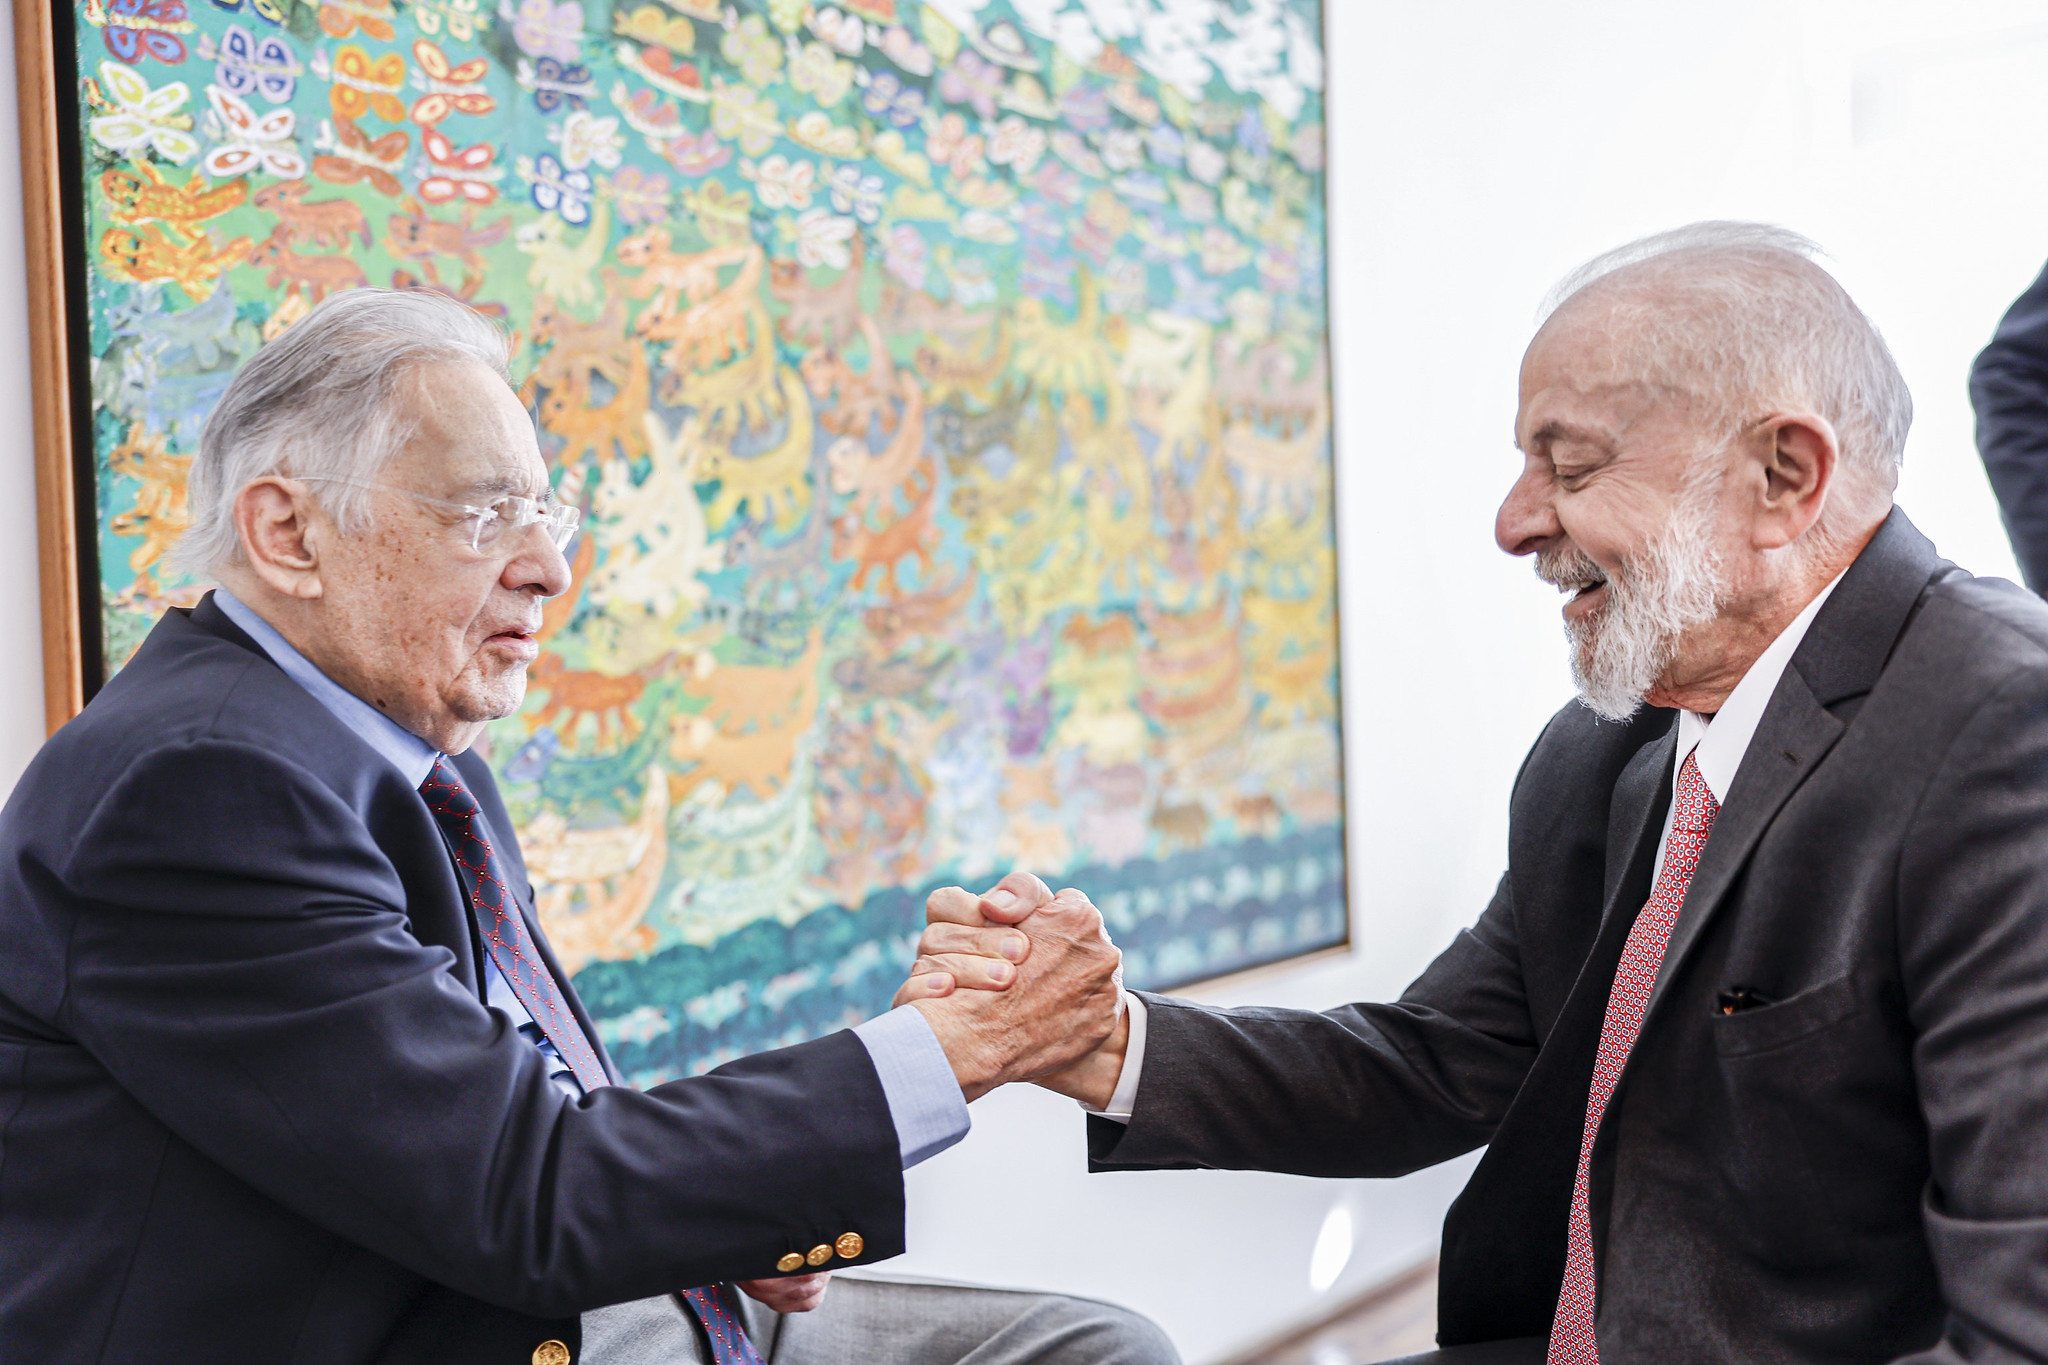 O ex-presidente Fernando Henrique Cardoso (PSDB) recebeu a visita do presidente Luiz Inácio Lula da Silva (PT) (Foto: Ricardo Stuckert/PR)